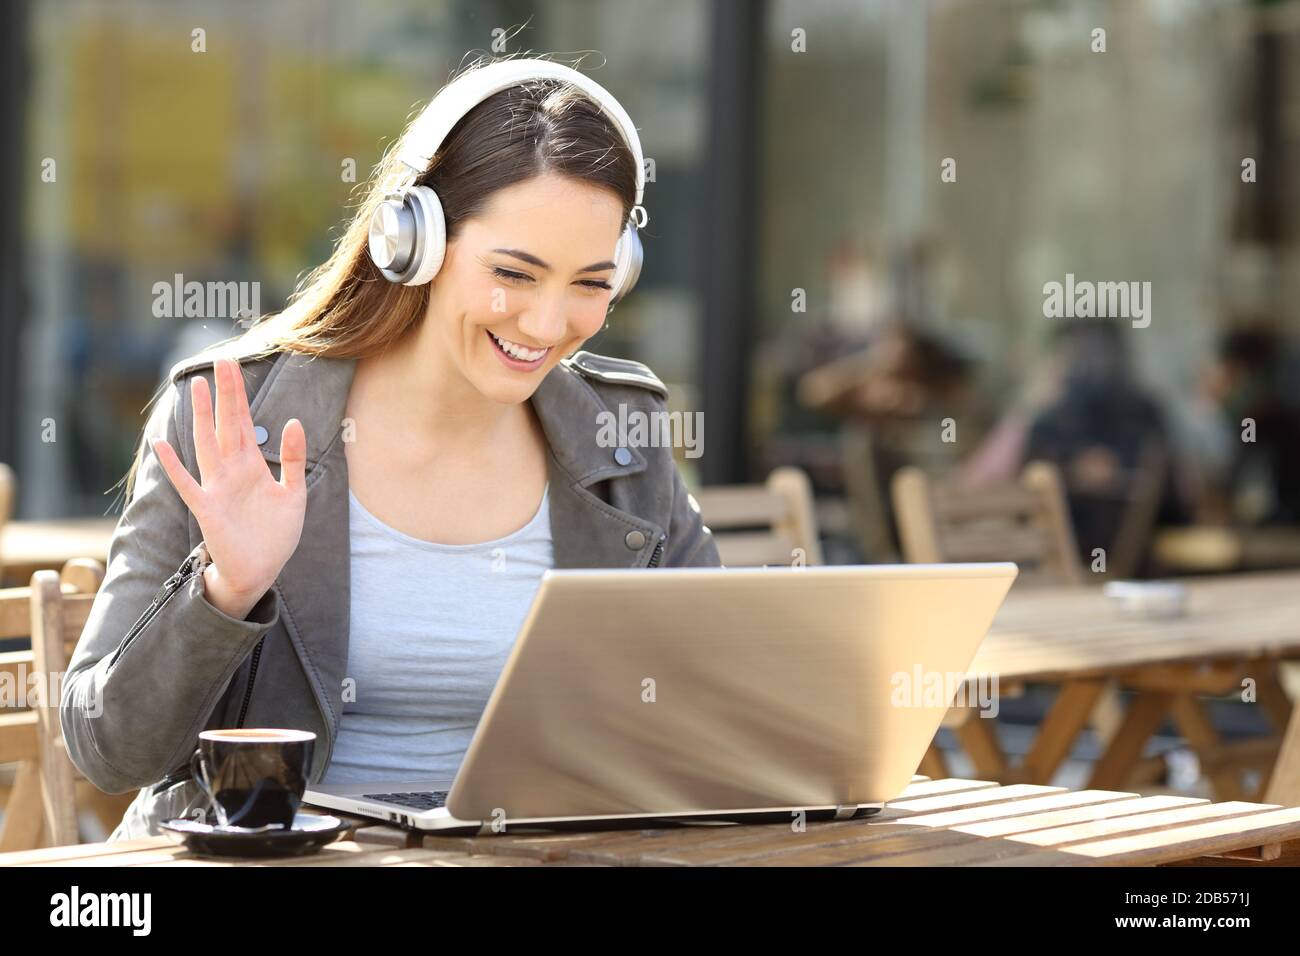 Glückliche Frau, die auf einem Laptop ein schnurloses Headset-Videoband  trägt und auf einer Café-Terrasse sitzt Stockfotografie - Alamy